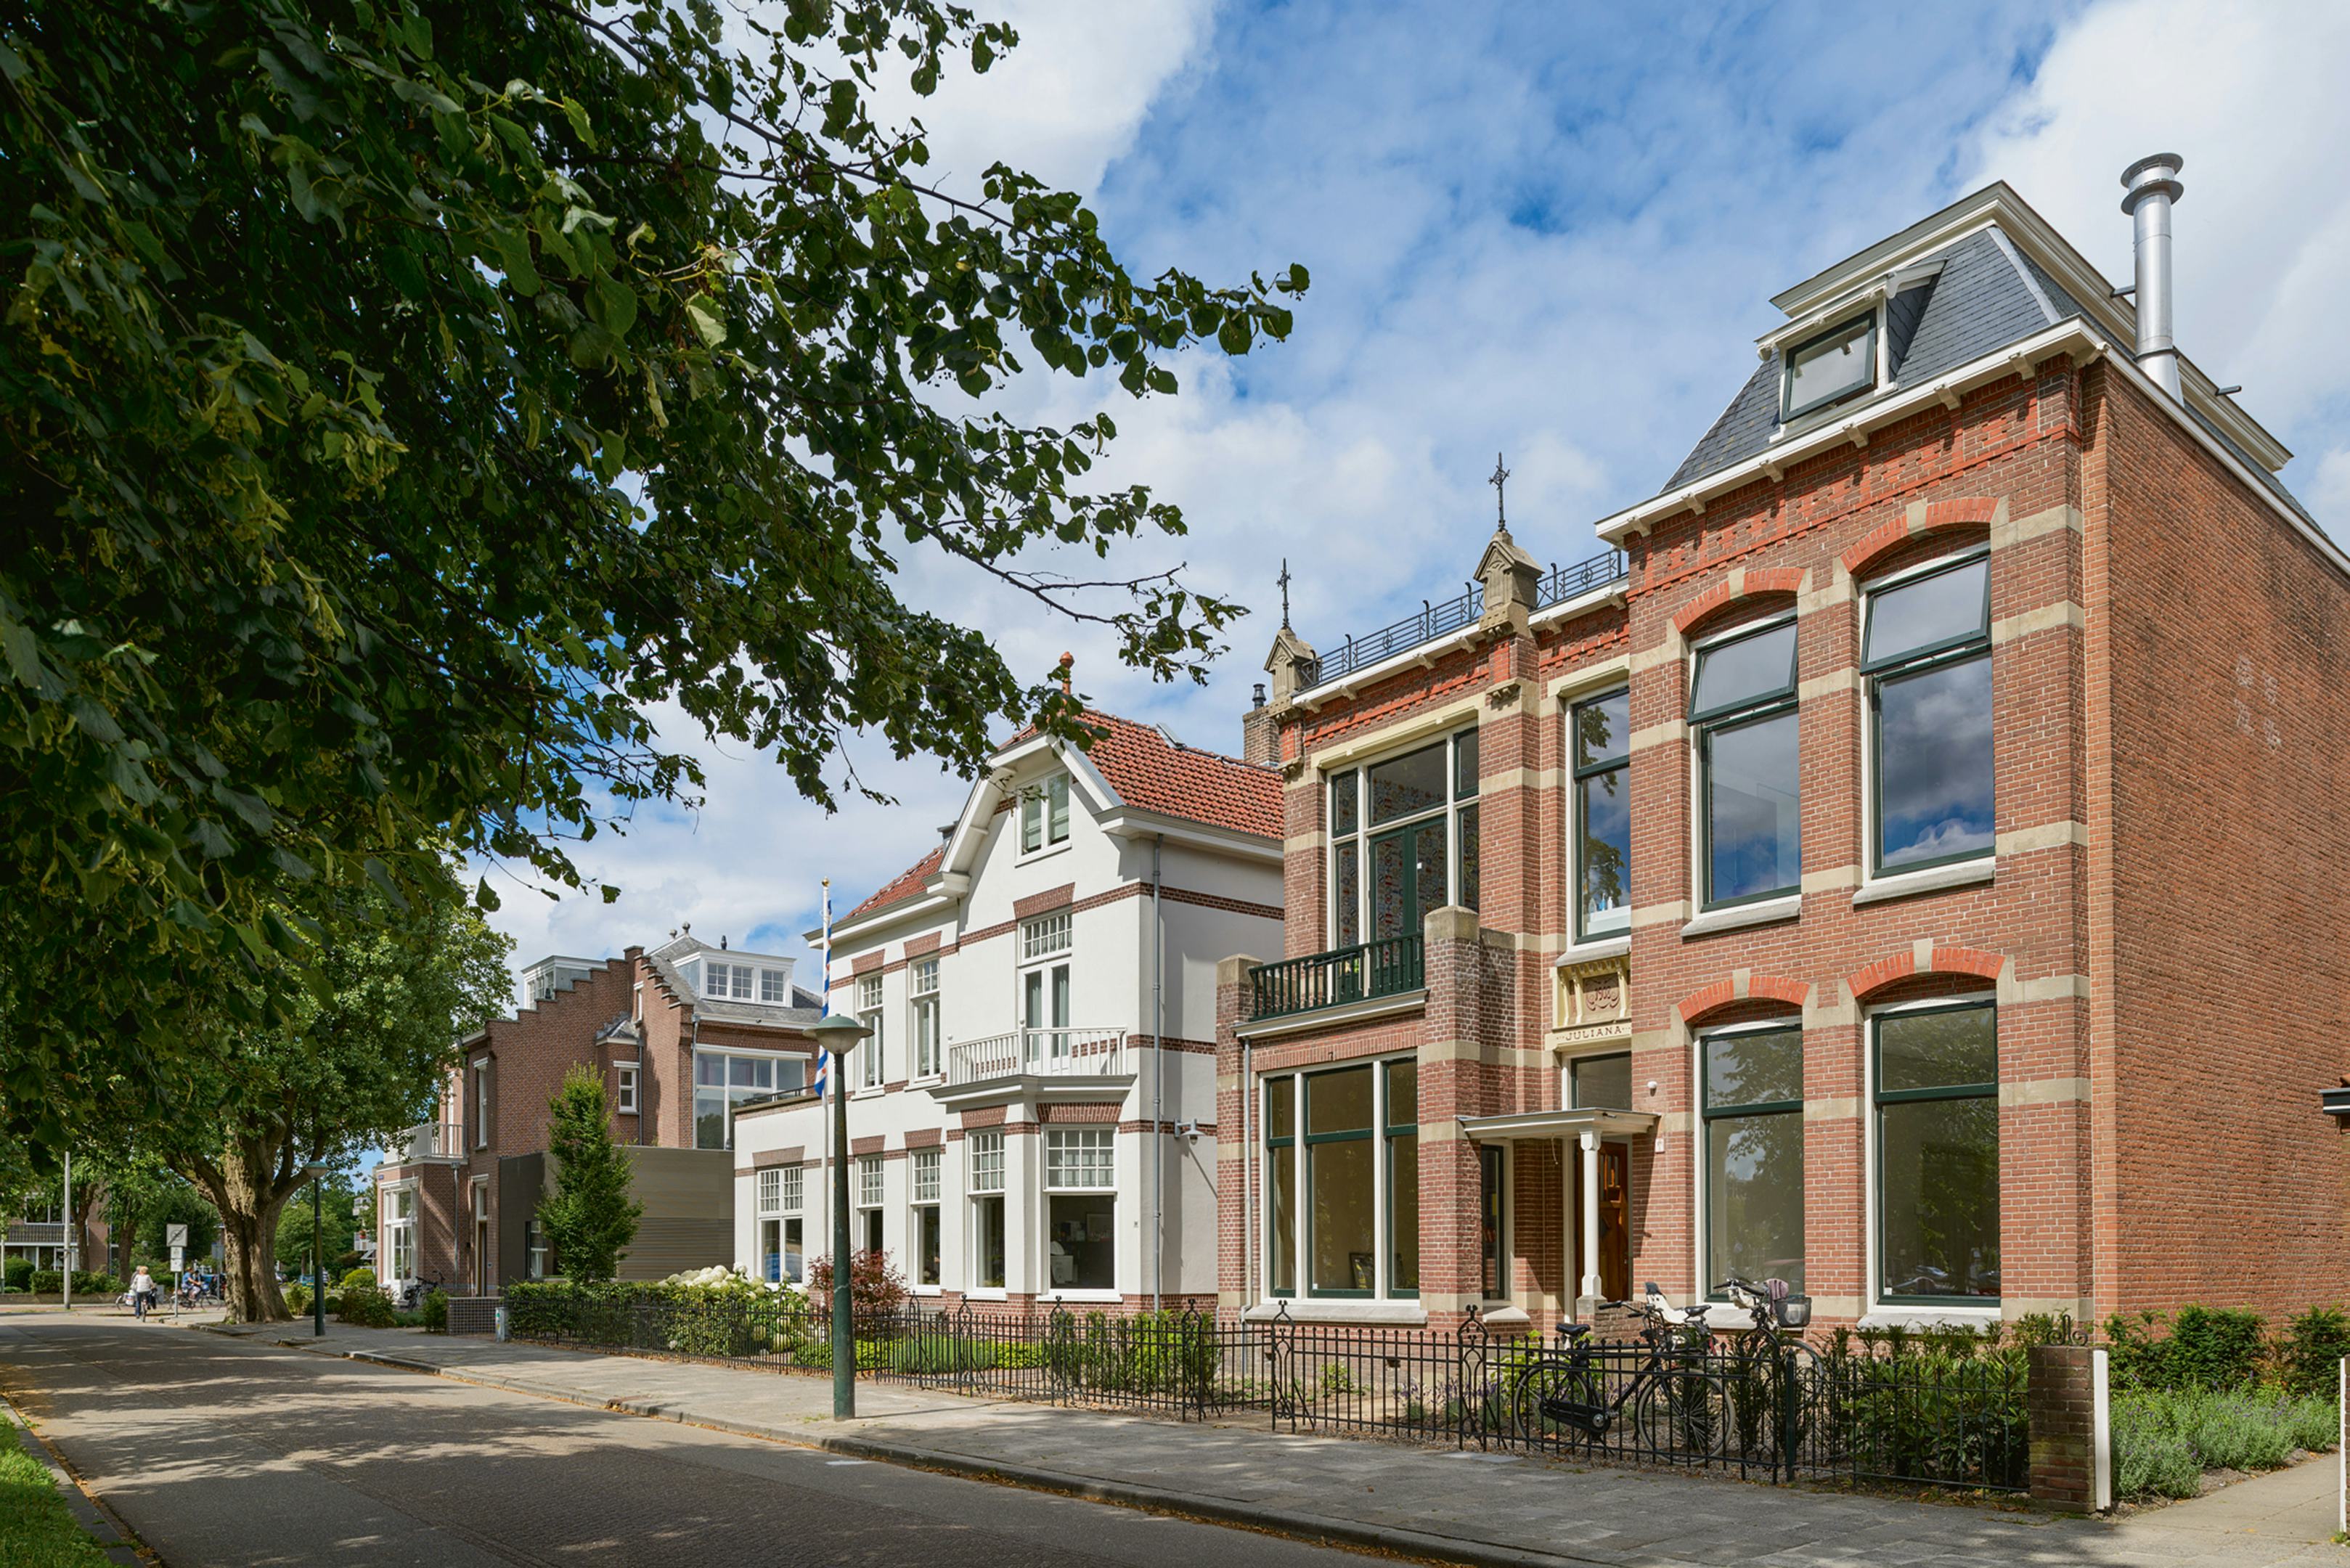 Villa Juliana is een gemeentelijk monument uit 1908, gelegen aan de oude vestinggracht in Leeuwarden - Beeld Pieter Kers